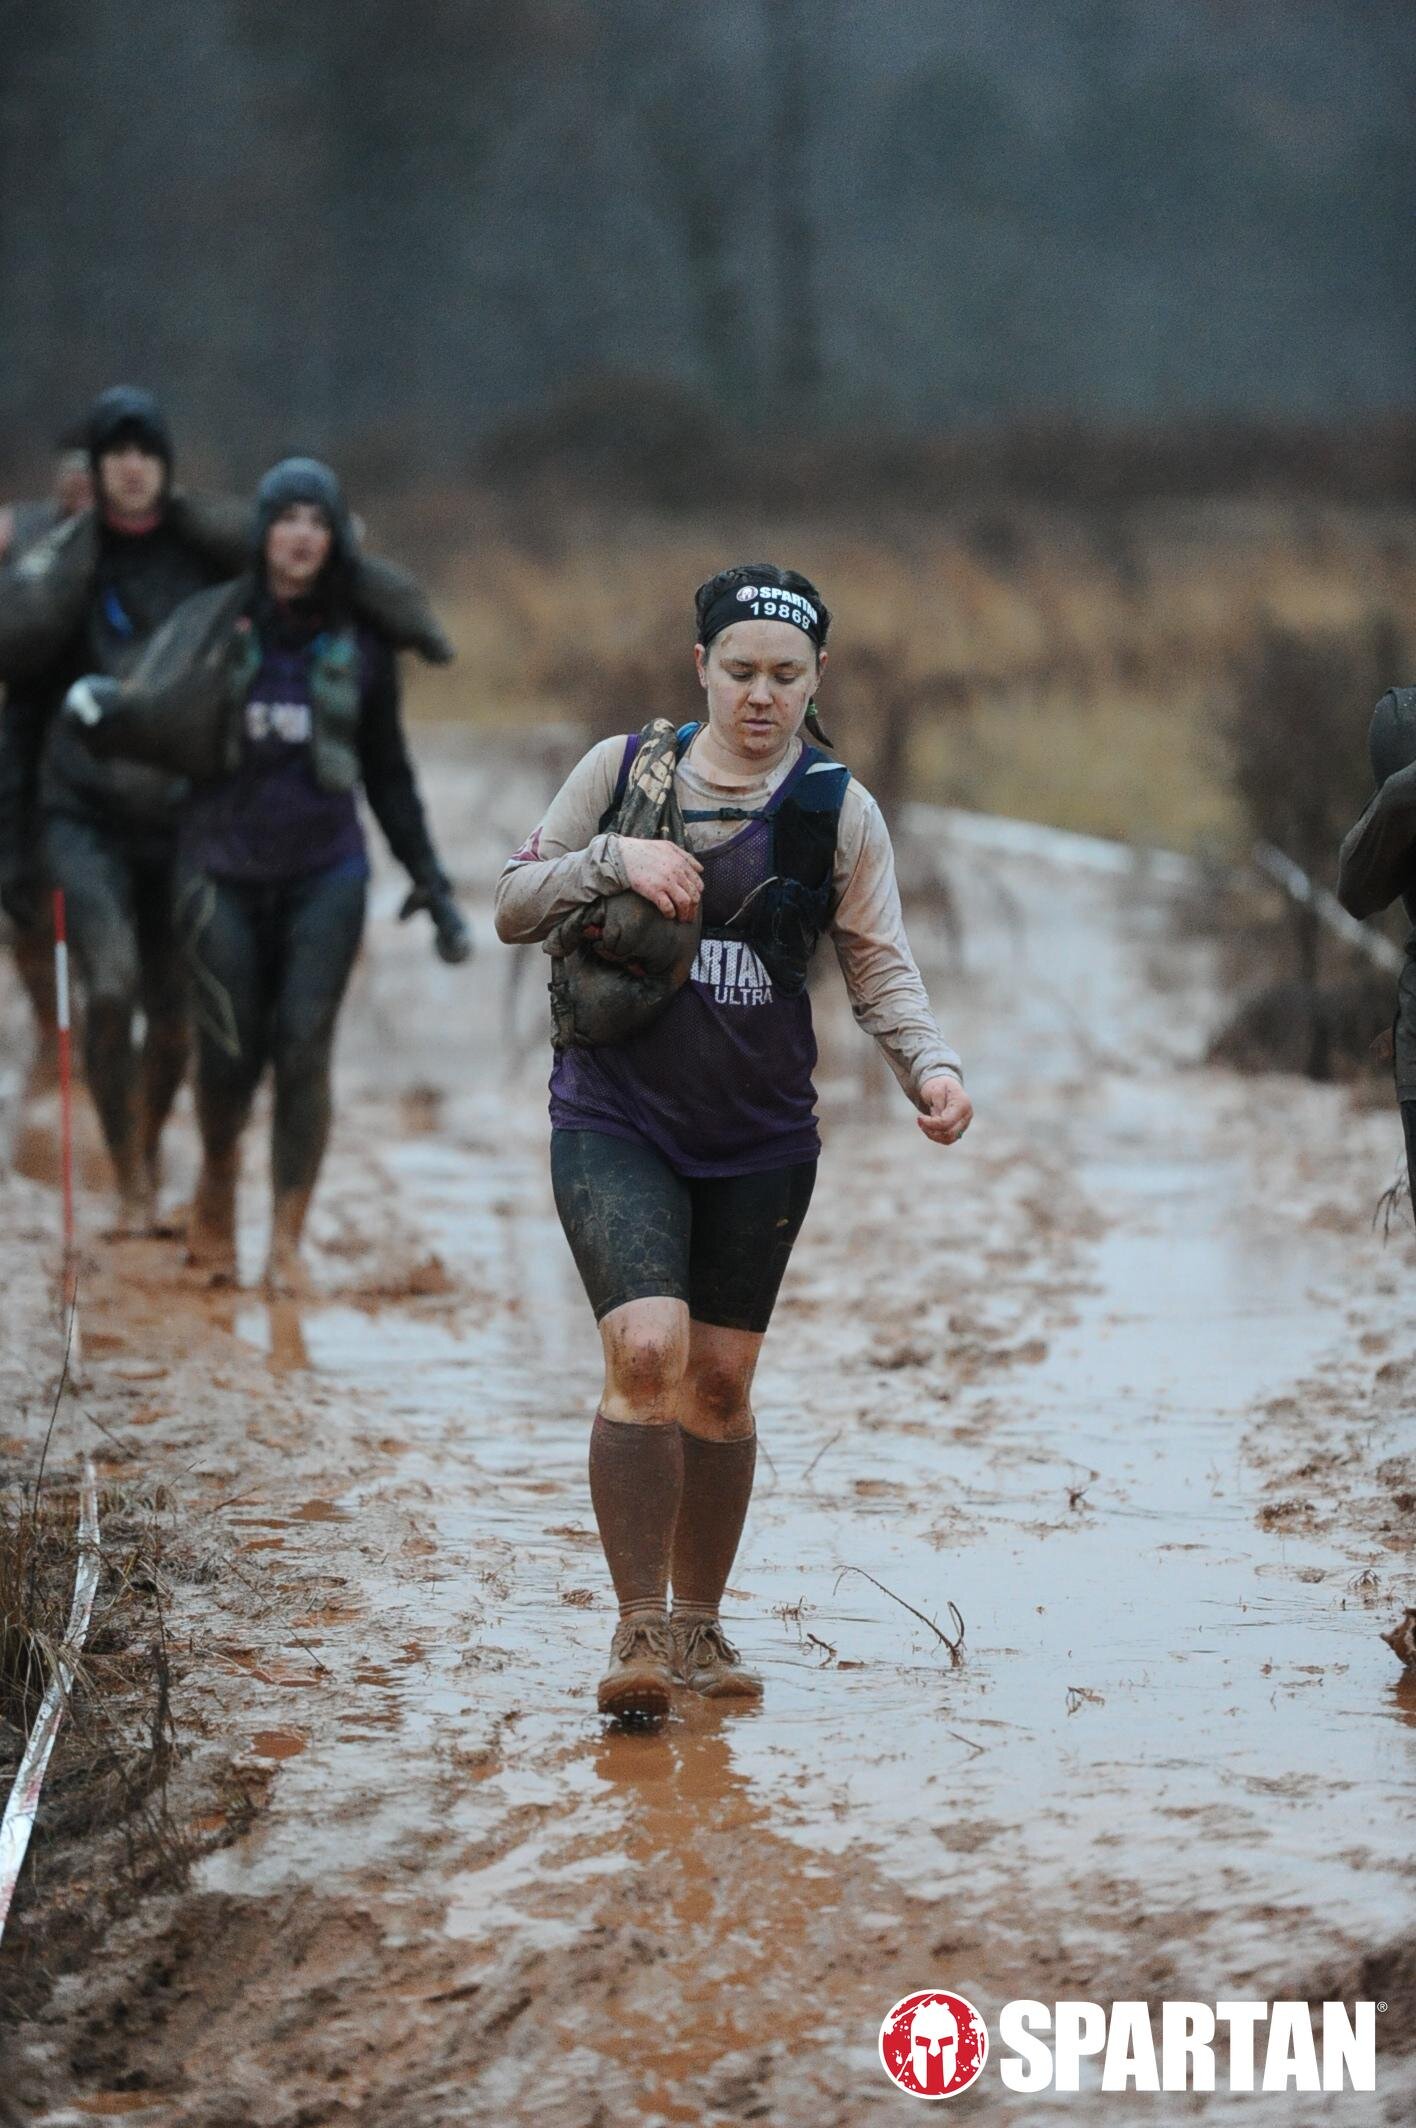 Trekking through mud during the Spartan Ultra marathon.